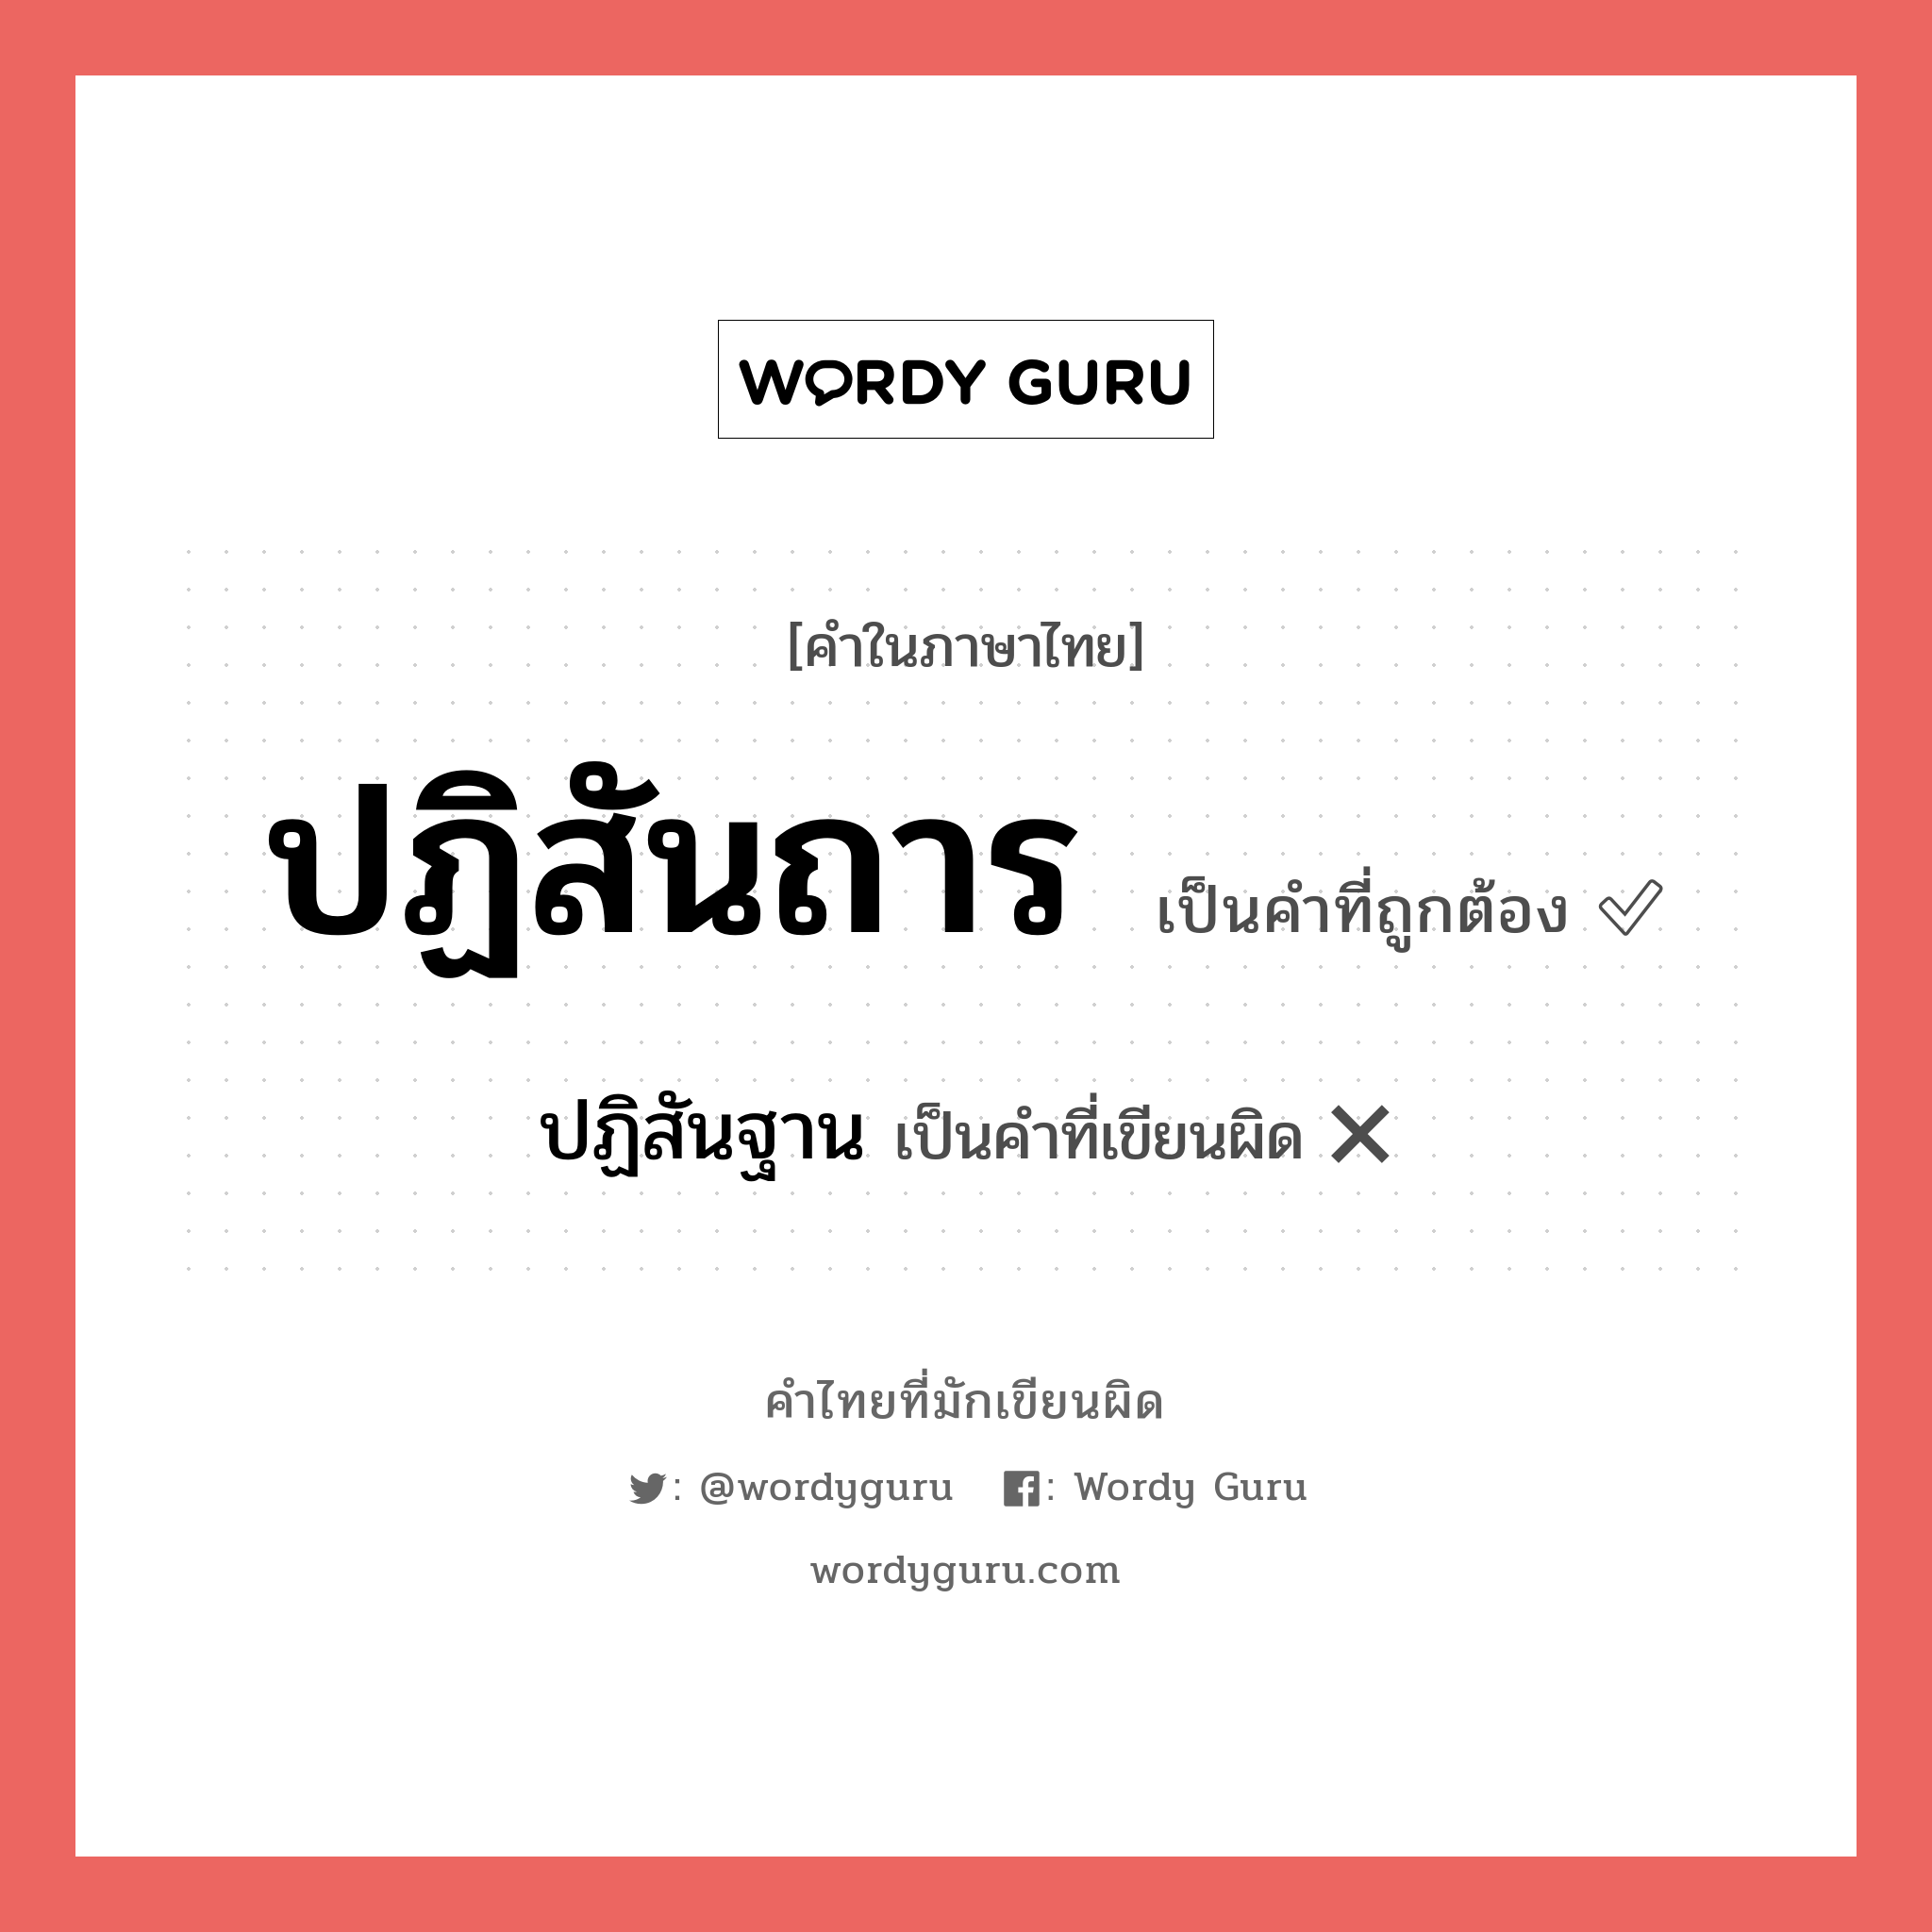 ปฏิสันฐาน หรือ ปฏิสันถาร คำไหนเขียนถูก?, คำในภาษาไทยที่มักเขียนผิด ปฏิสันฐาน คำที่ผิด ❌ ปฏิสันถาร